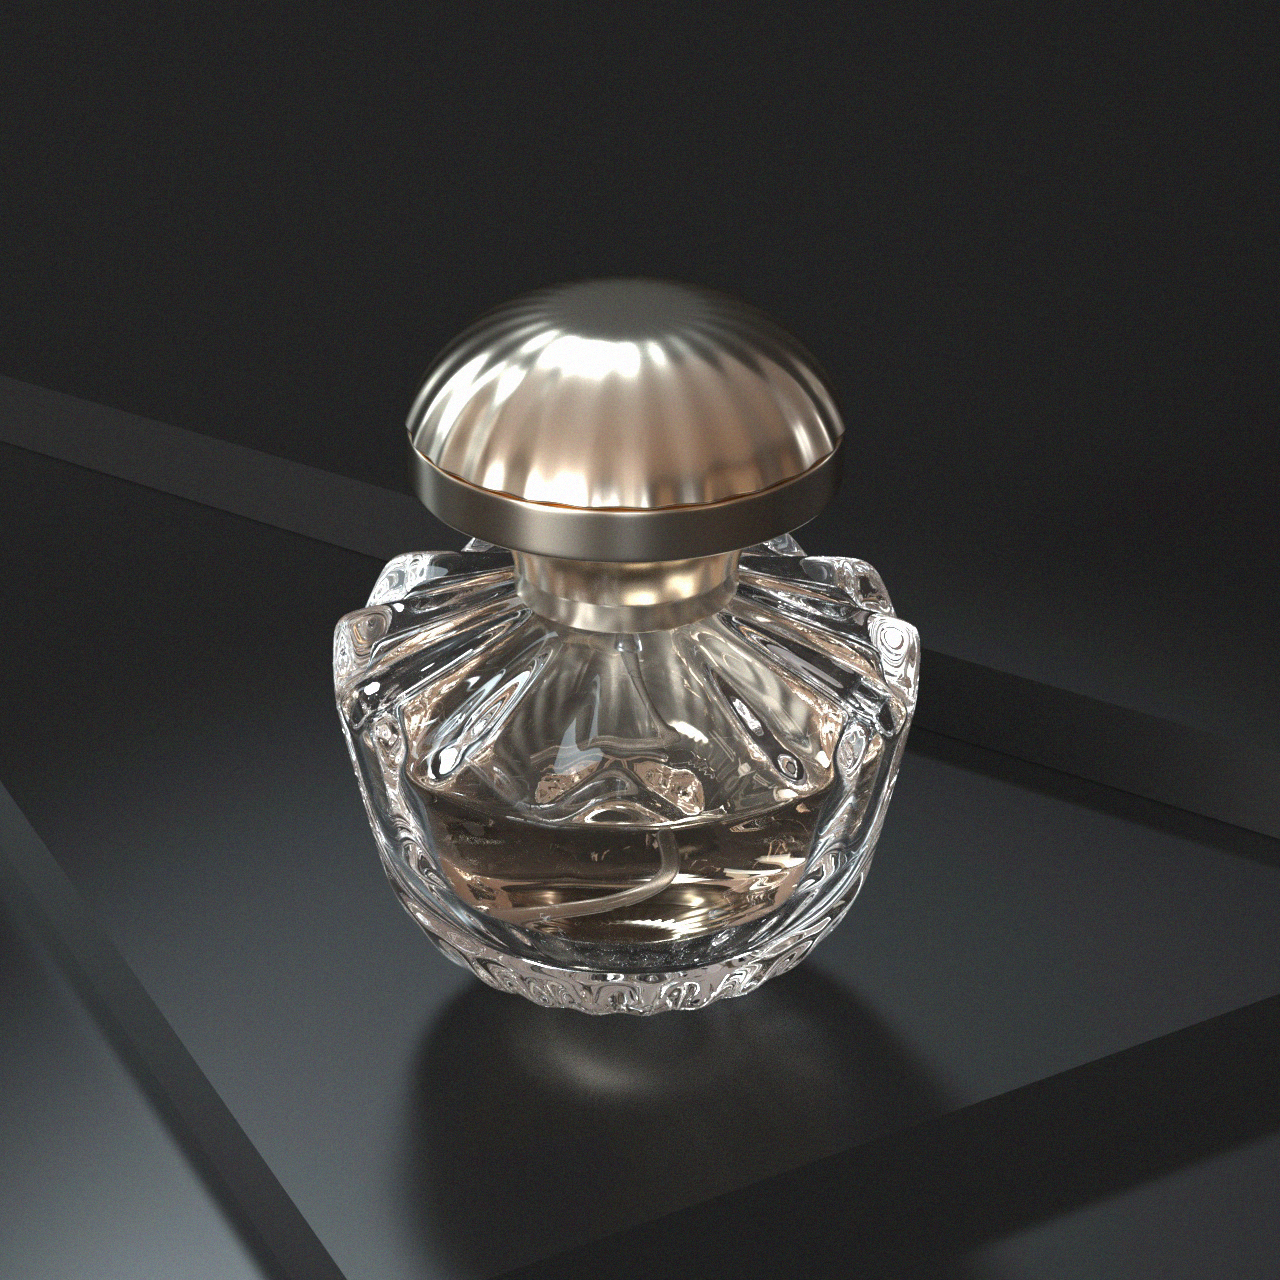 shell shaped perfume bottle